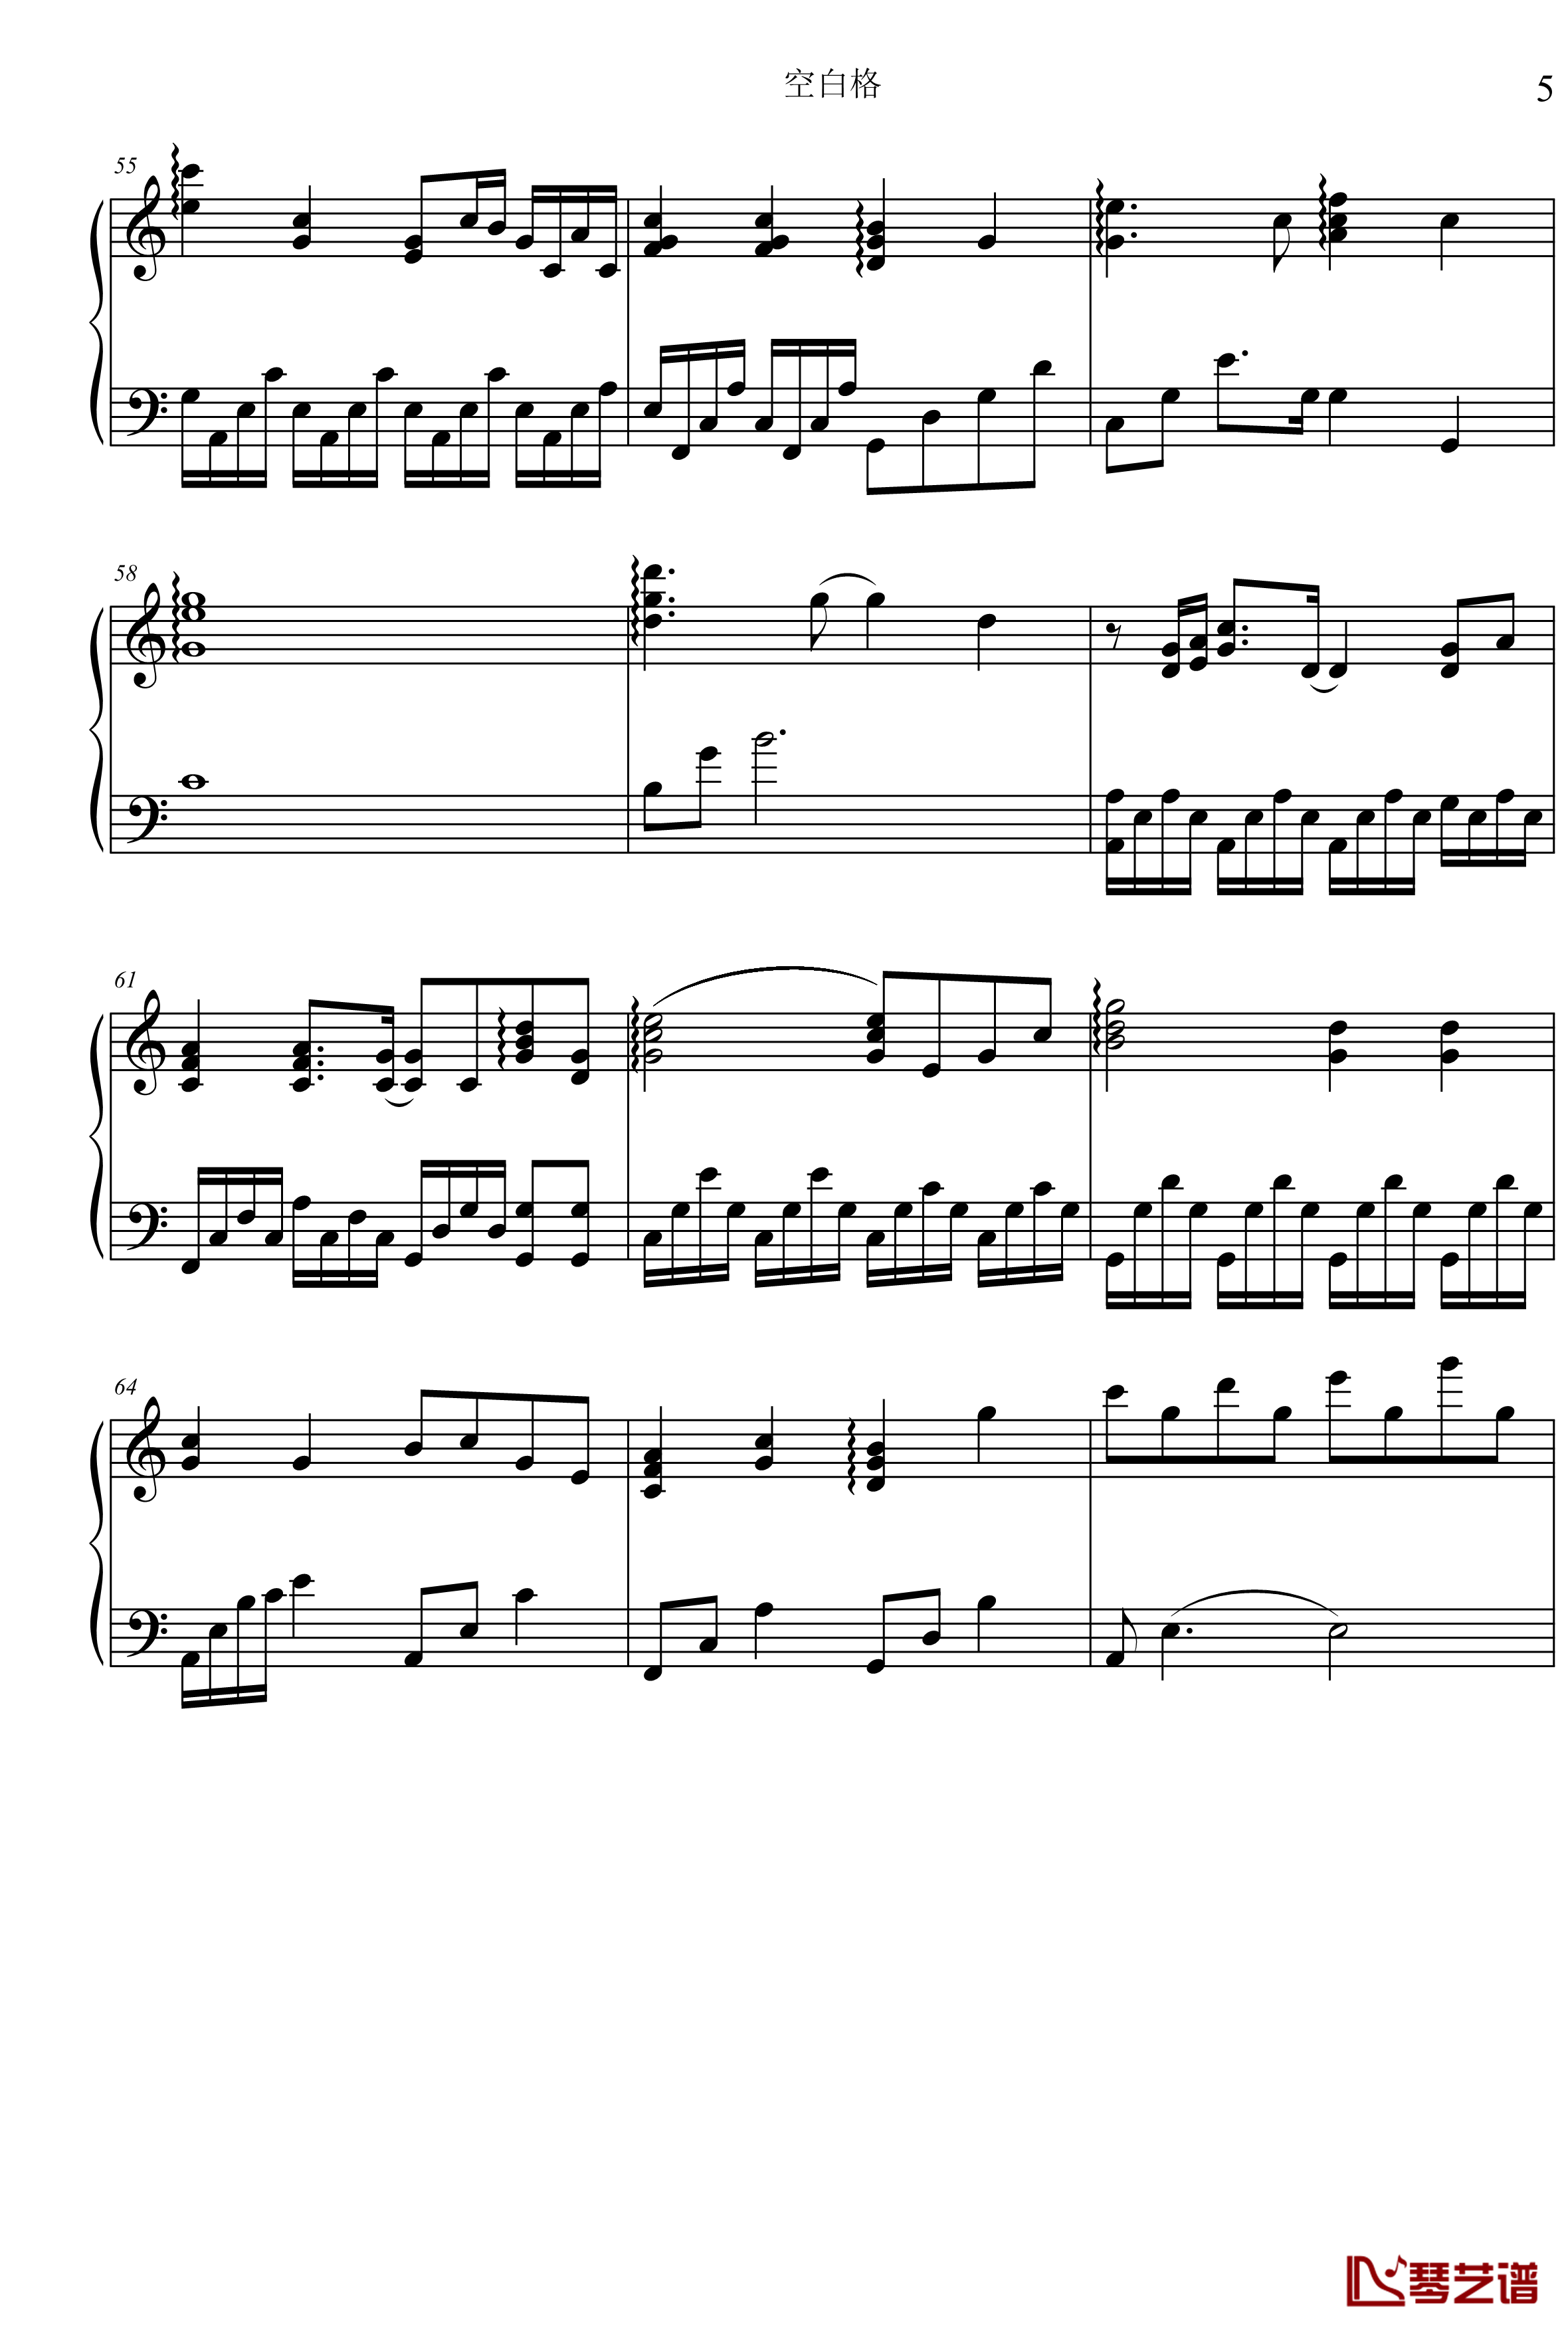 空白格钢琴谱-C调版本-蔡健雅